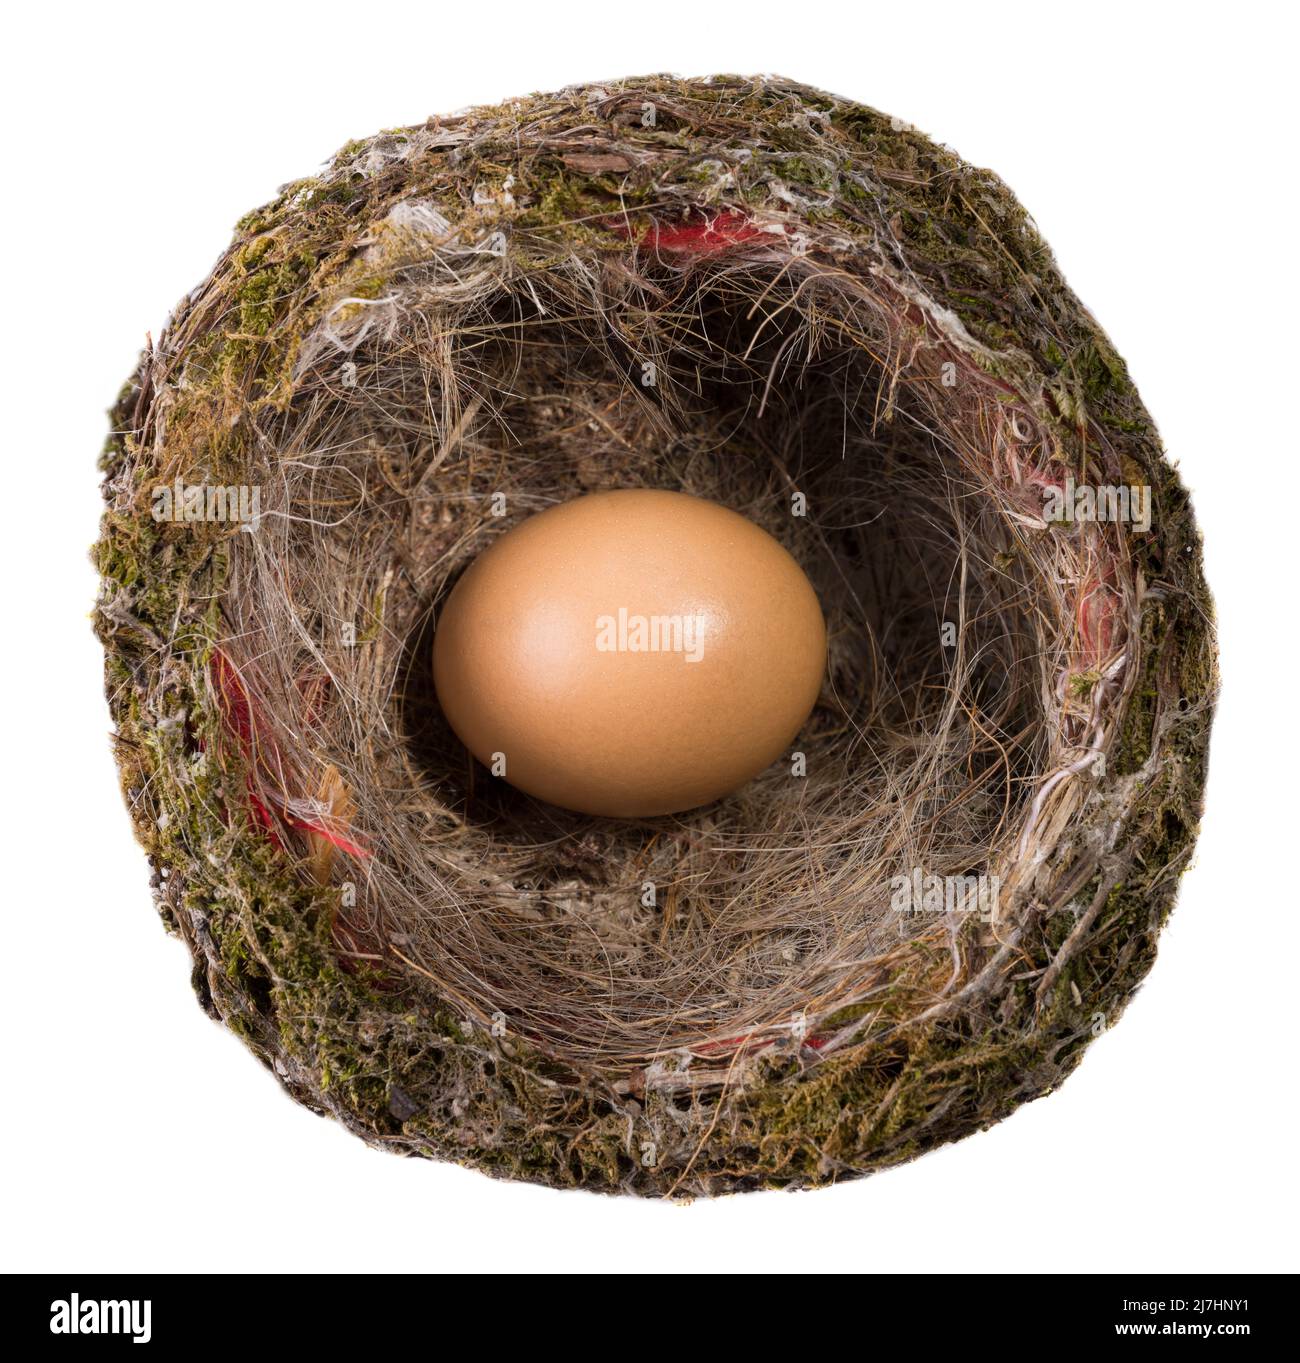 Gelbes Ei im hölzernen Vogelnest isoliert auf dem weißen Hintergrund. Natürliches Brid Nest Draufsicht. Stockfoto